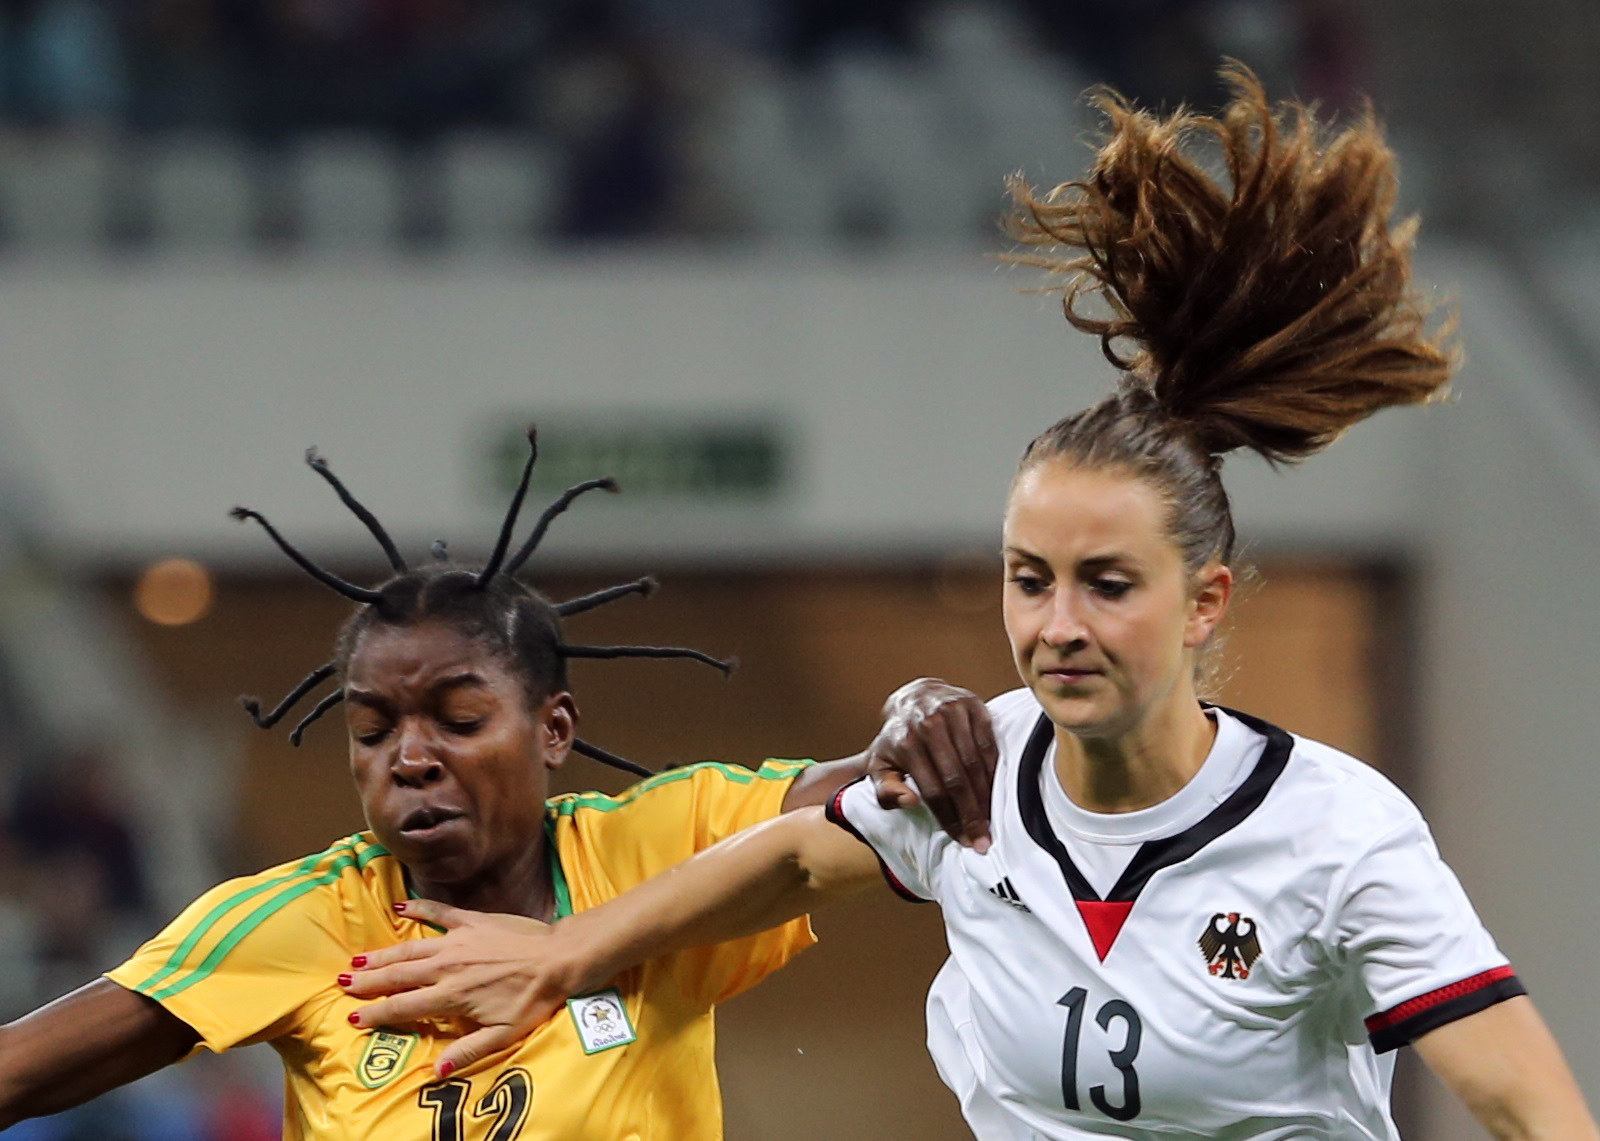 リオ五輪 サッカー女子ジンバブエ代表ニャウムウェさんの髪型が